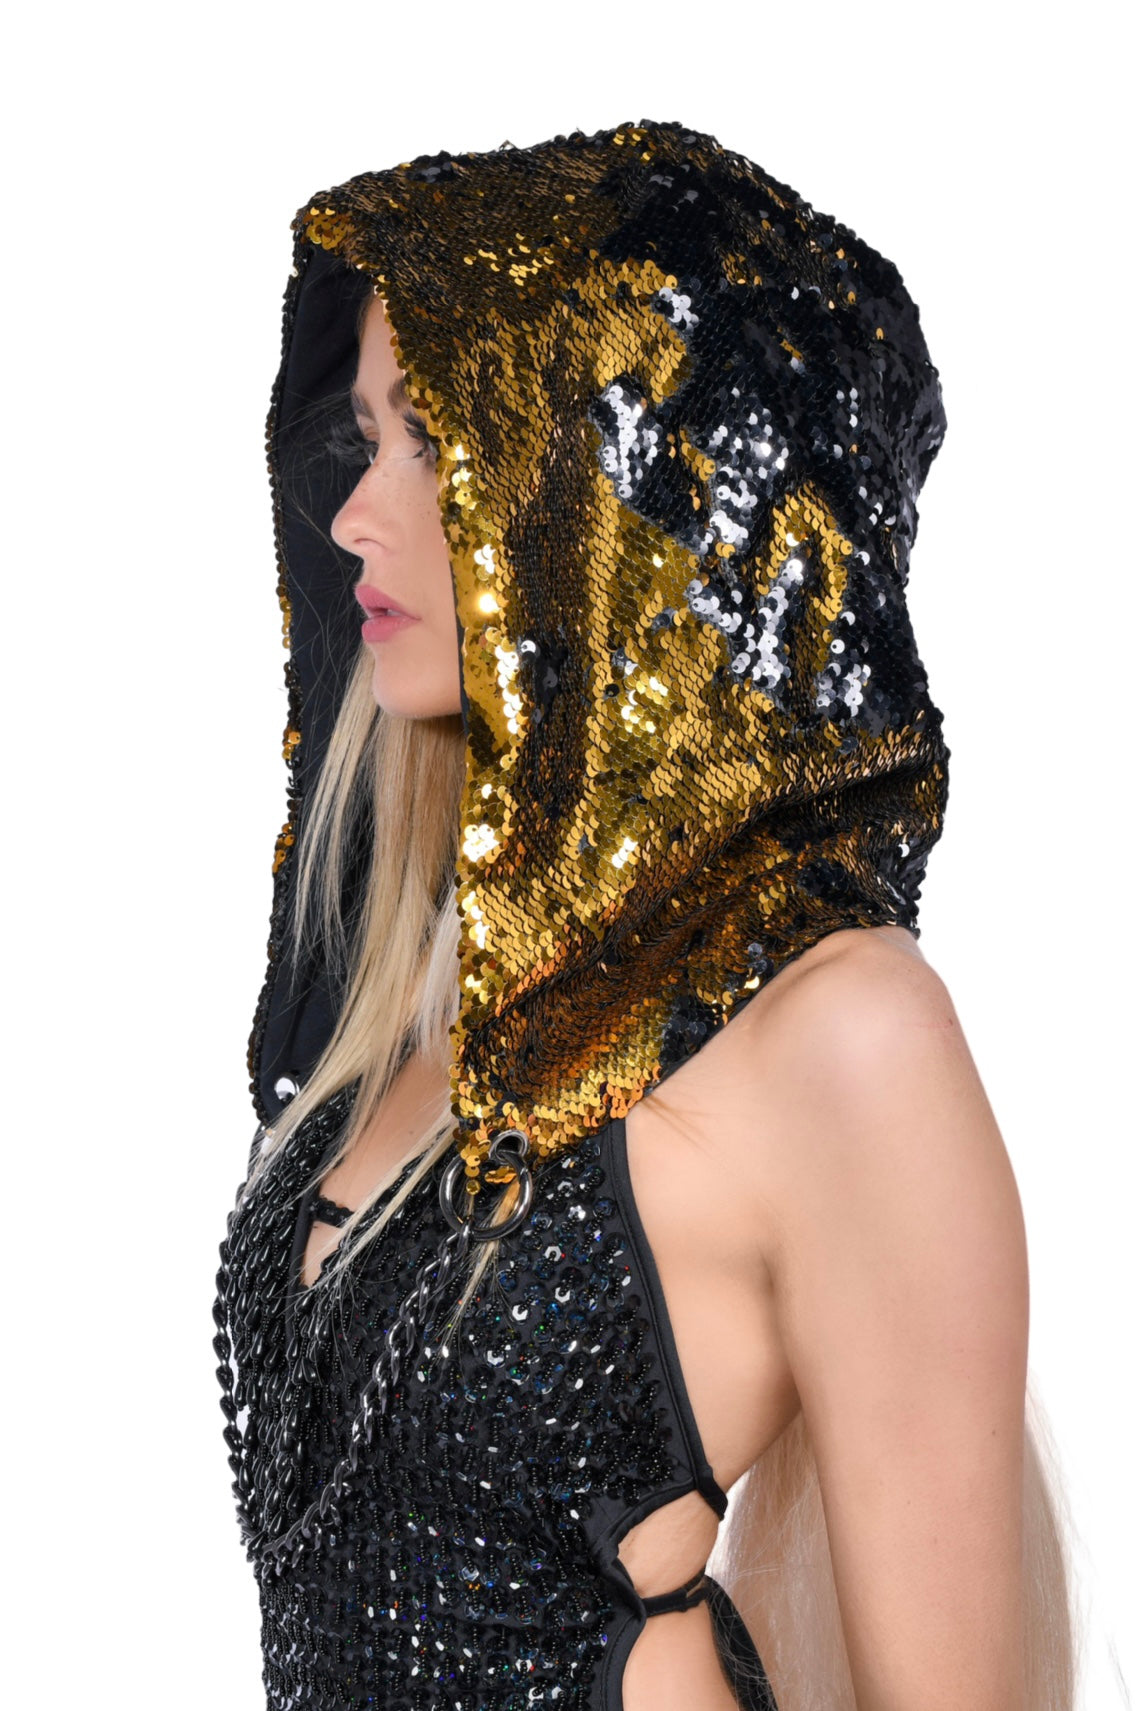 Reversible Sequin Hood - Gold & Black